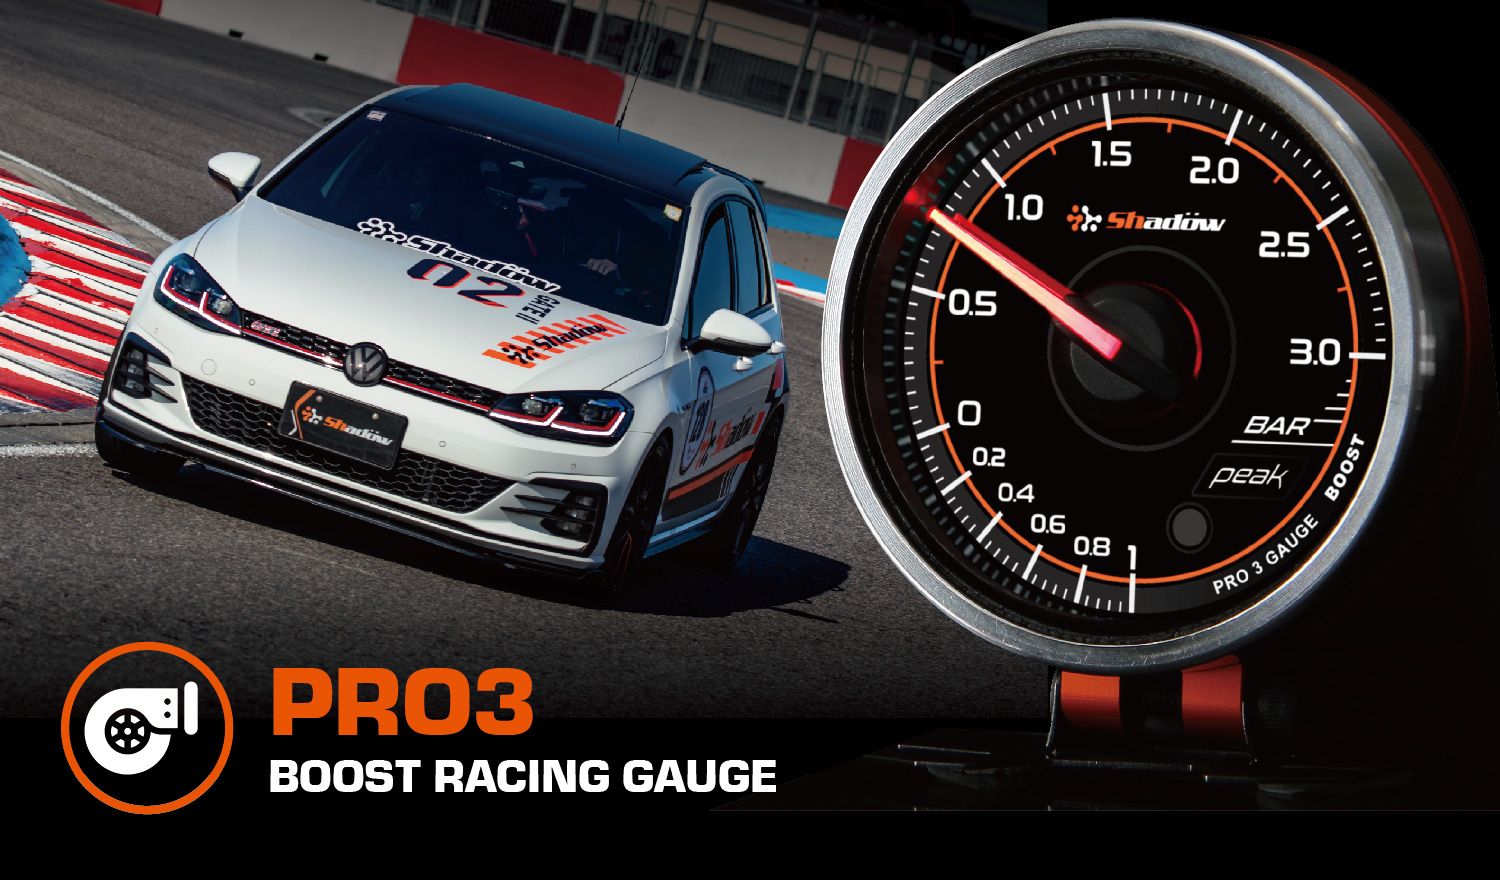 Medición del medidor de refuerzo turbo Boost Racing varía desde -1.0 bar hasta 3.0 bar.